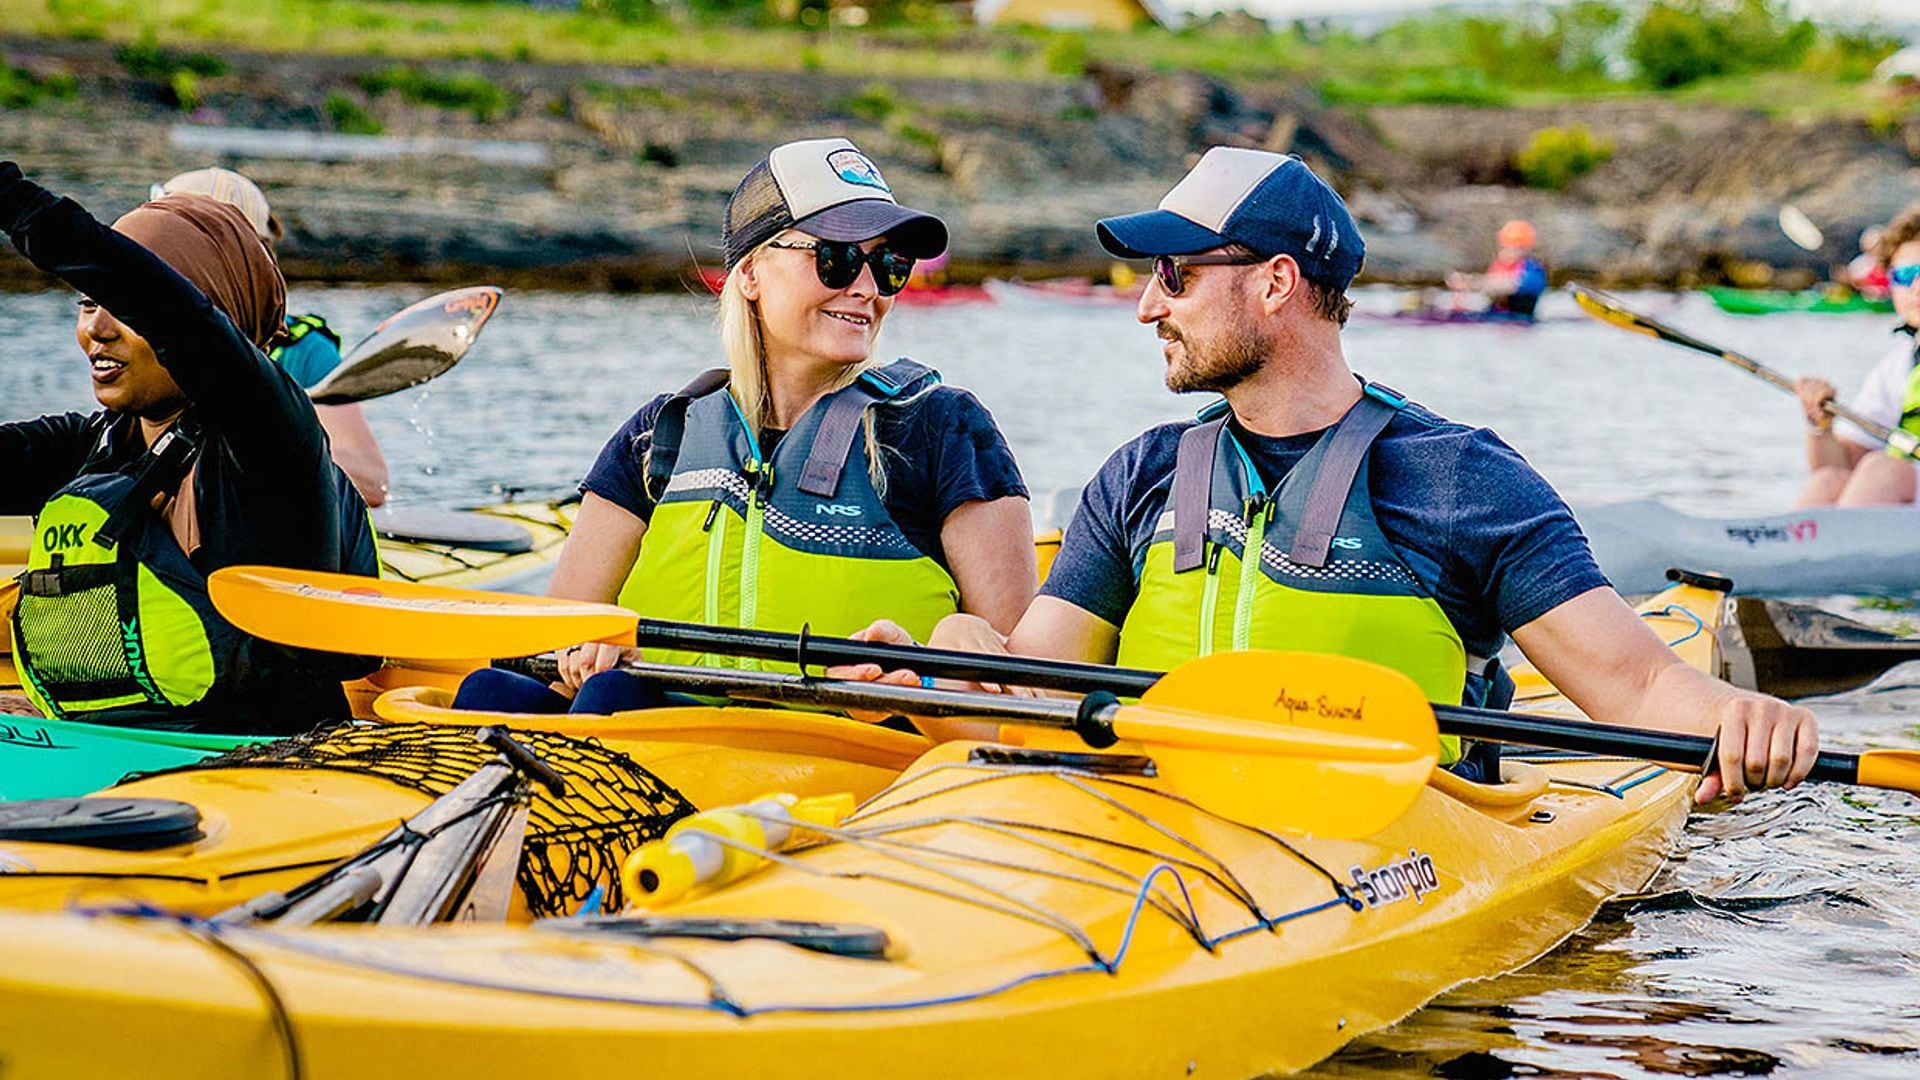 Chaleco, remo y kayak: a Haakon y Mette-Marit de Noruega nos les falta detalle en su última aventura